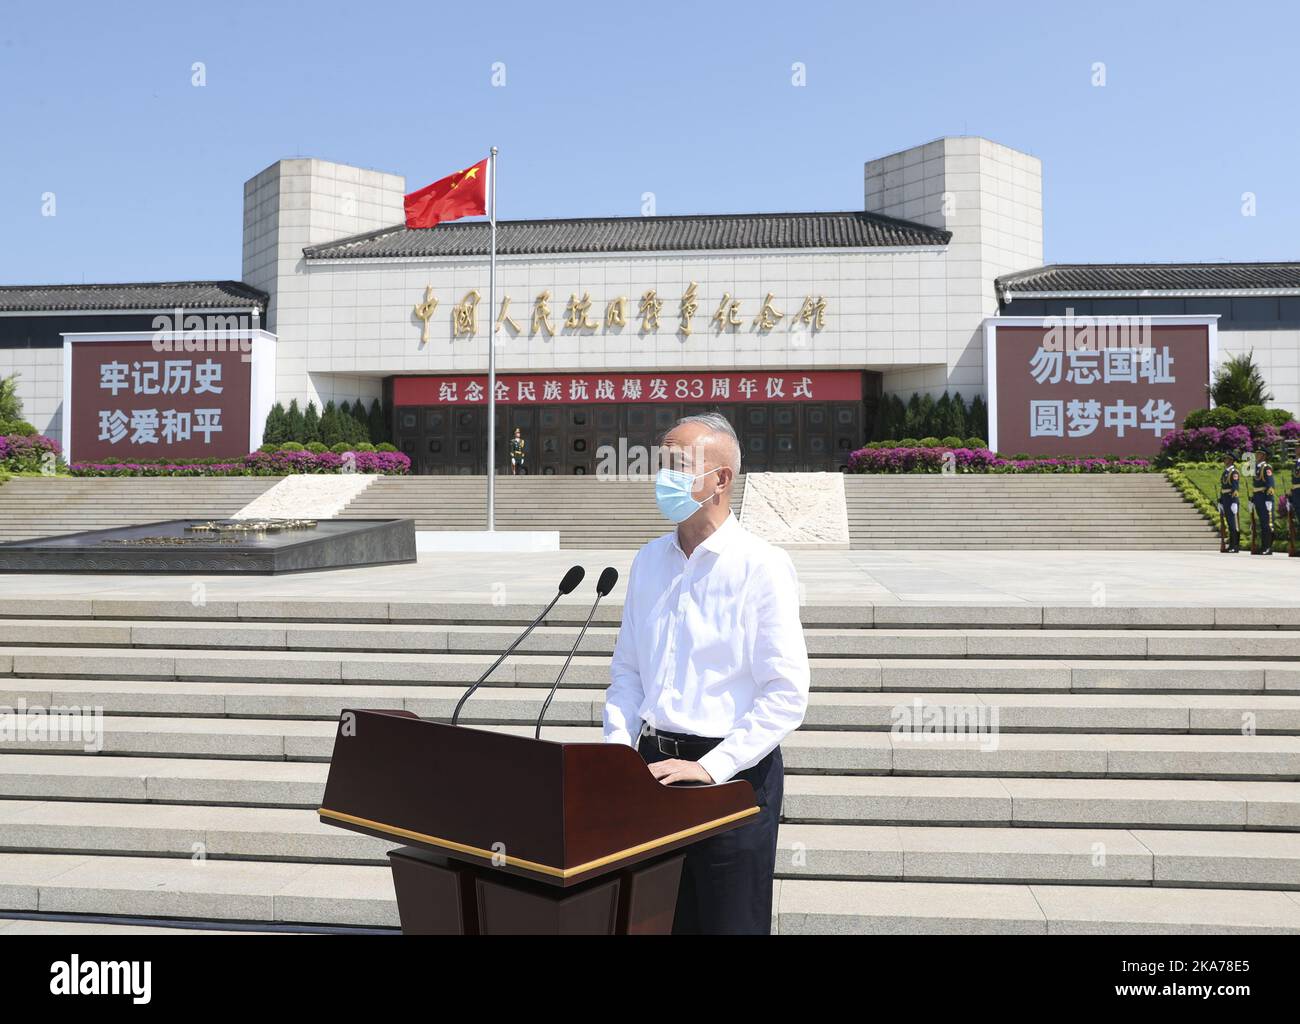 (200707) -- PEKING, 7. Juli 2020 (Xinhua) -- Cai Qi, Mitglied des Politbüros des Zentralkomitees der Kommunistischen Partei Chinas (KPCh) und Sekretär des Pekinger Stadtkomitees der KPCh, Vorsitzender einer Zeremonie anlässlich des 83.. Jahrestages des chinesischen Widerstandskrieges gegen japanische Aggression im Museum des Widerstands des chinesischen Volkes gegen japanische Aggression in Peking, der Hauptstadt Chinas, am 7. Juli 2020. (Xinhua/Ding Haitao) Stockfoto